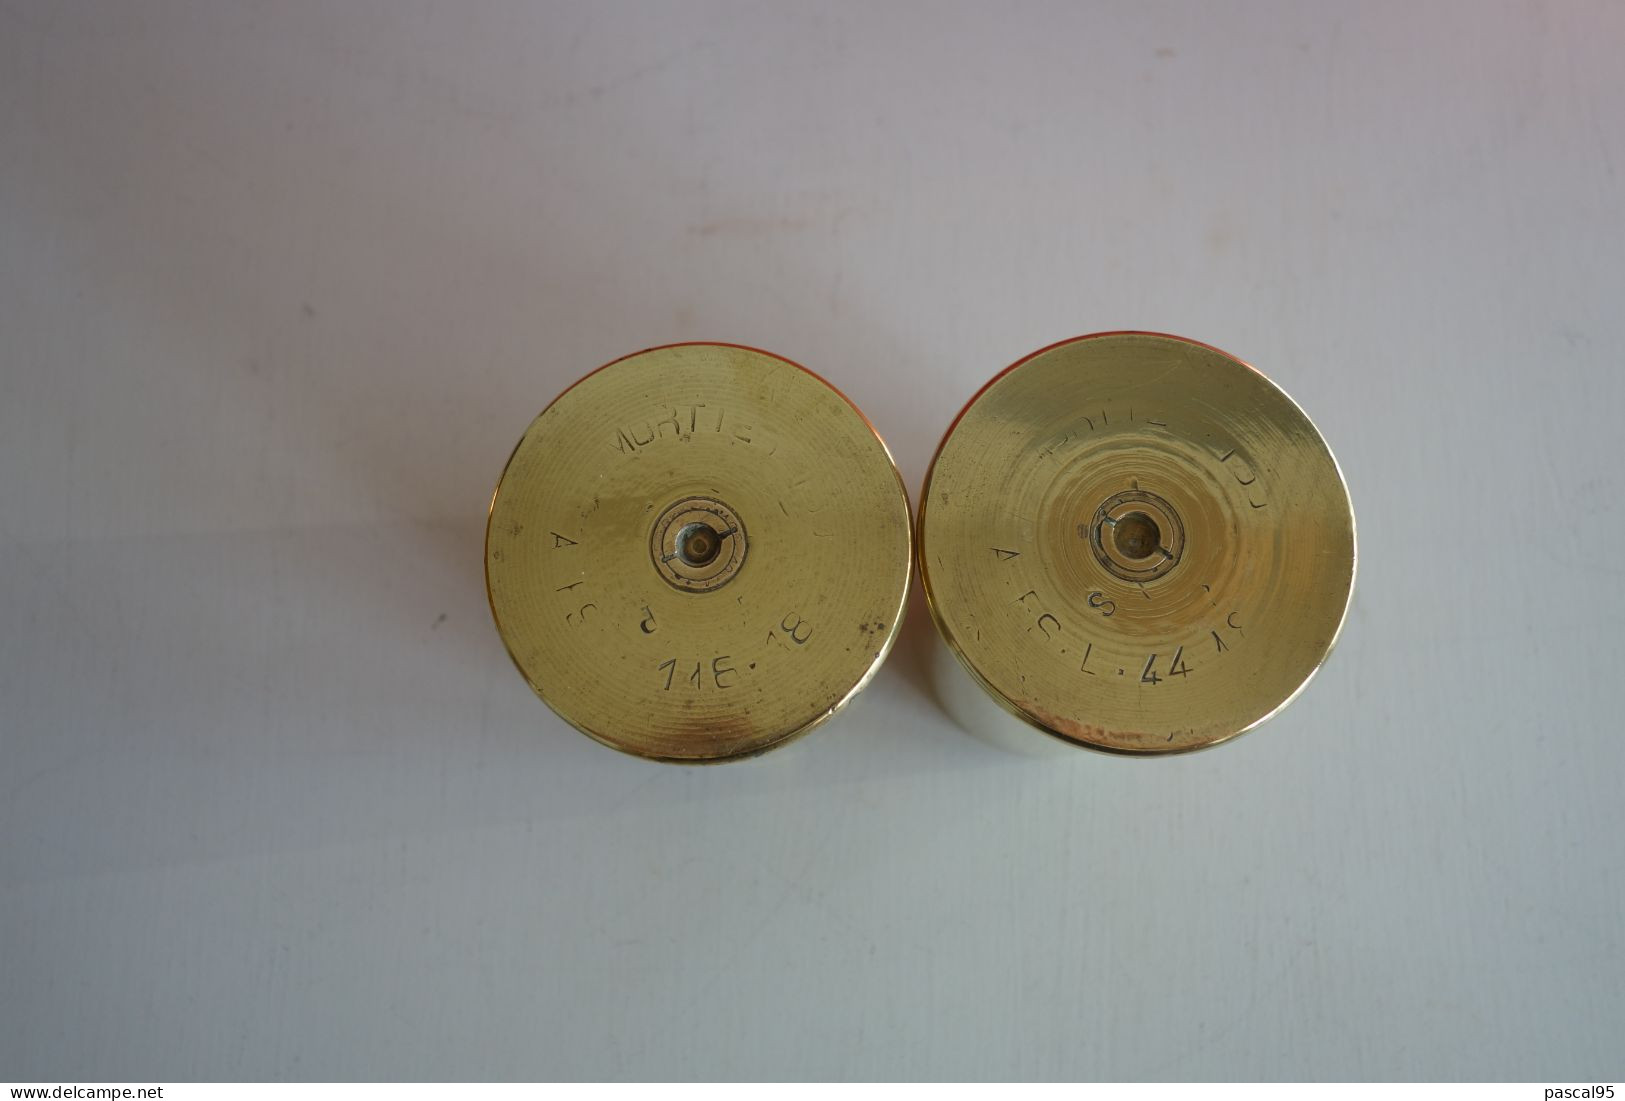 Une paire de petites Douilles  ( mortier 1918 )